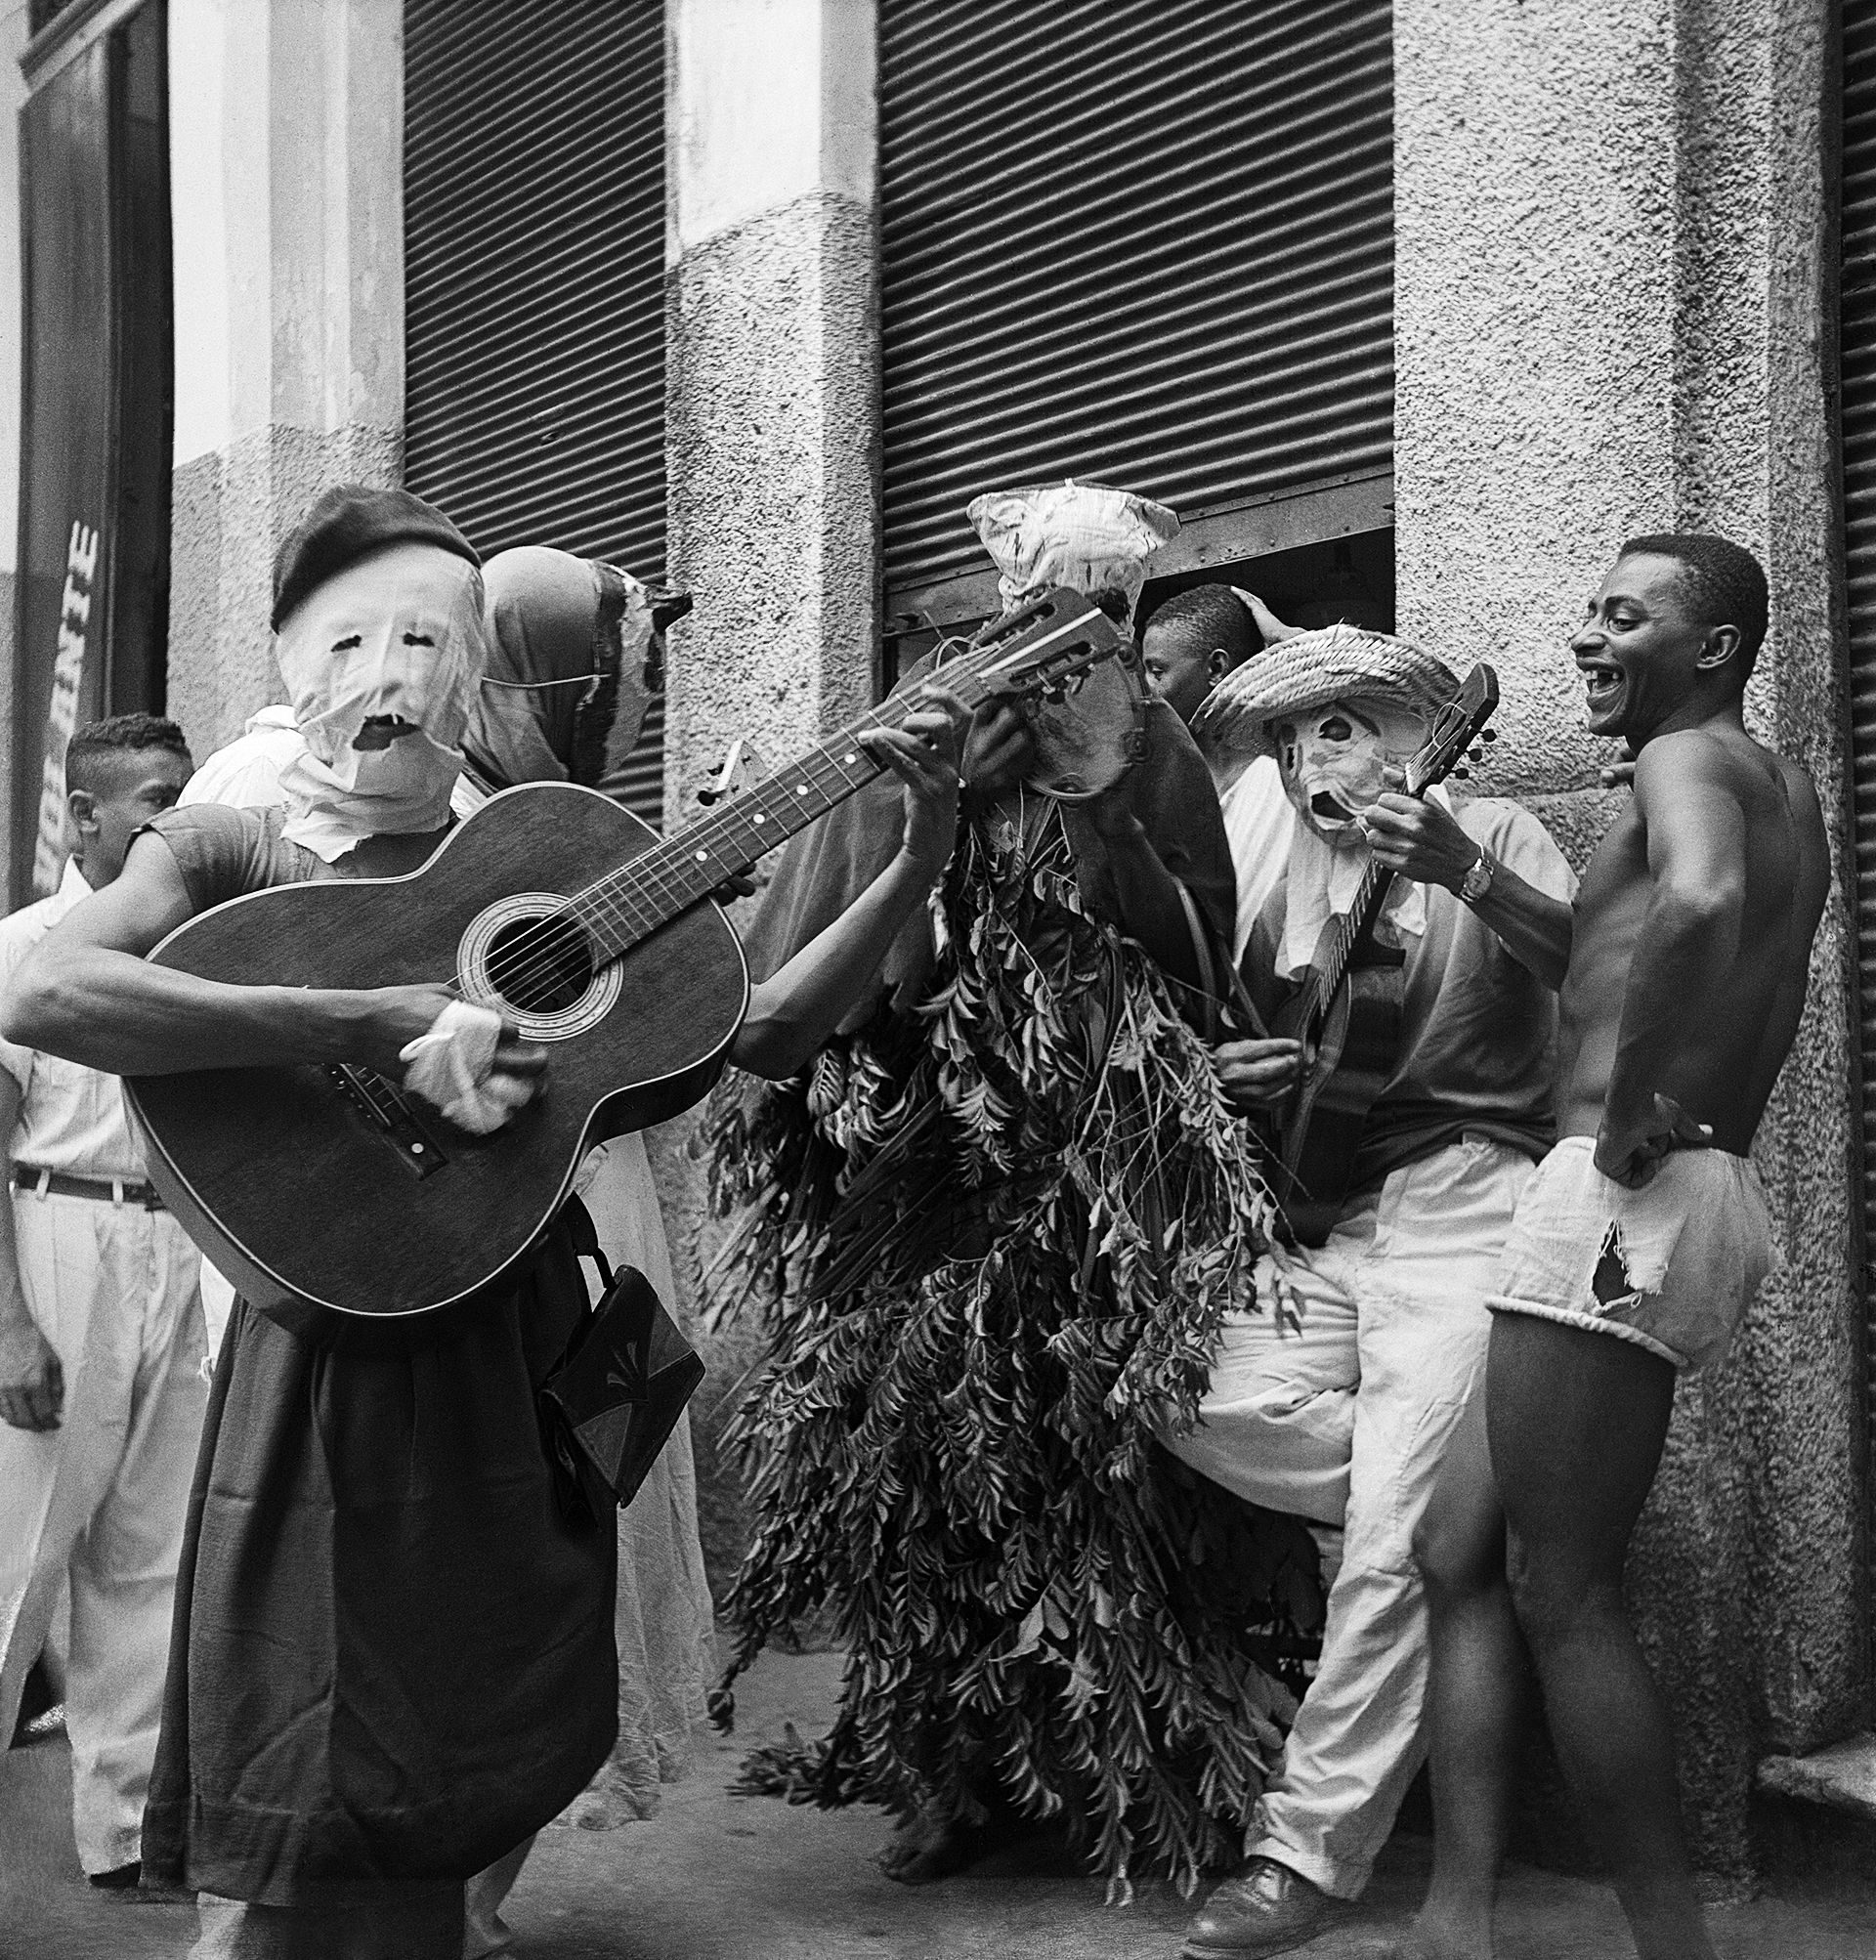 Autoria: Alice Brill Legenda: Salvador, Bahia, 1953  Negativo flexível p&amp;b 6x6 cm